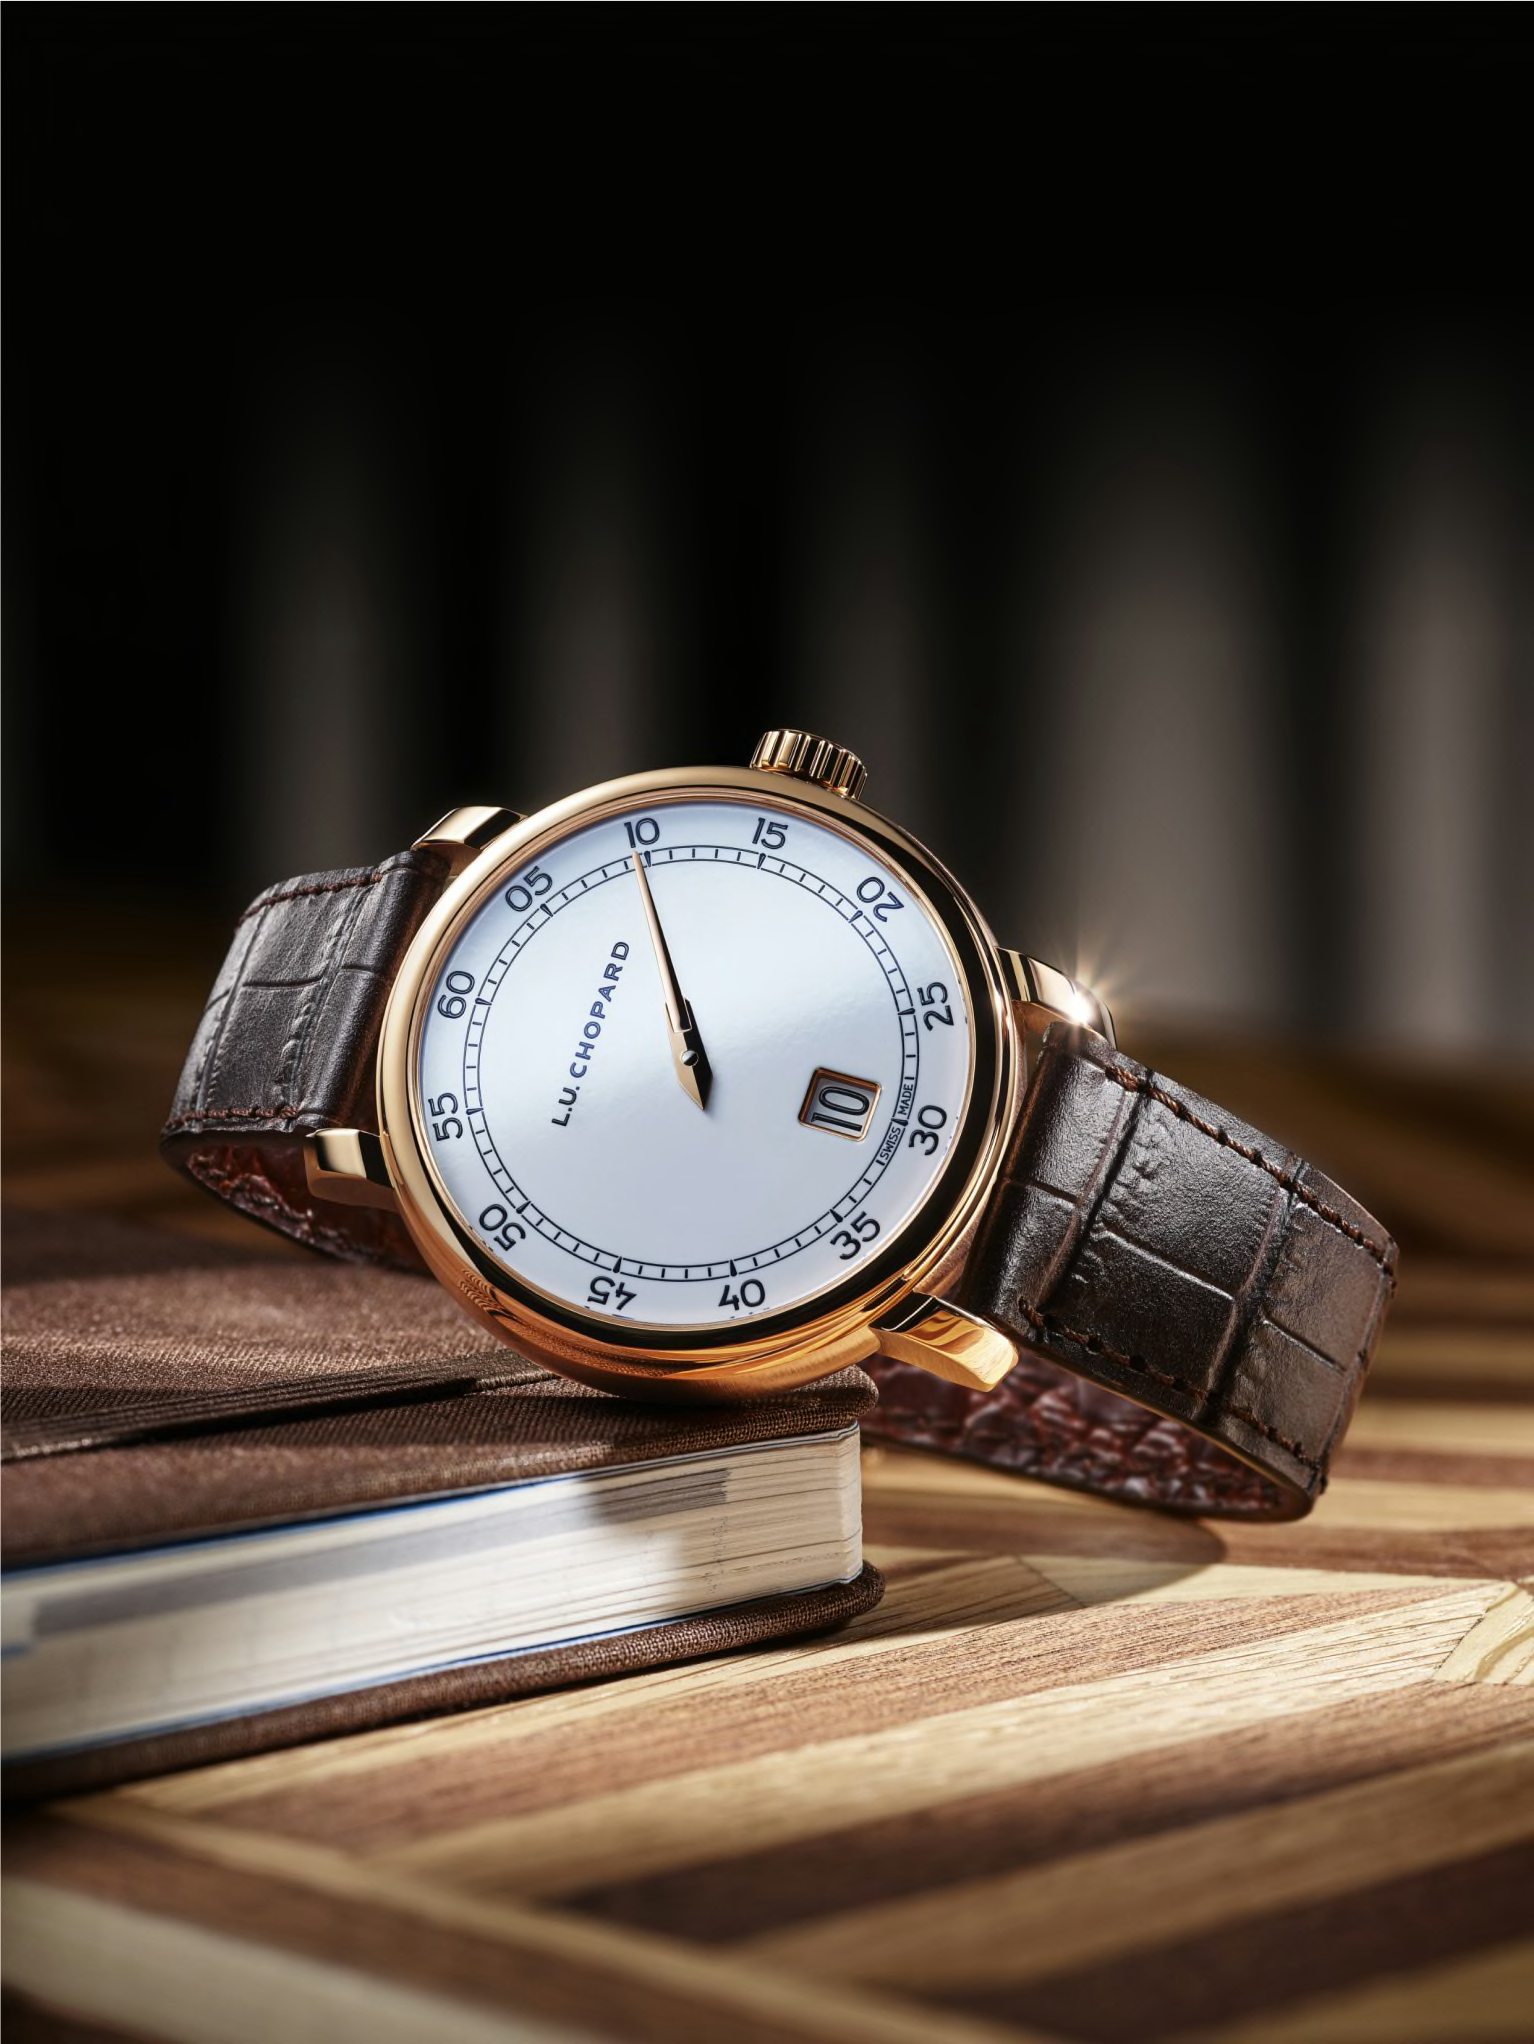 L.U.C Swiss watches: pure design, mechanical sophistication